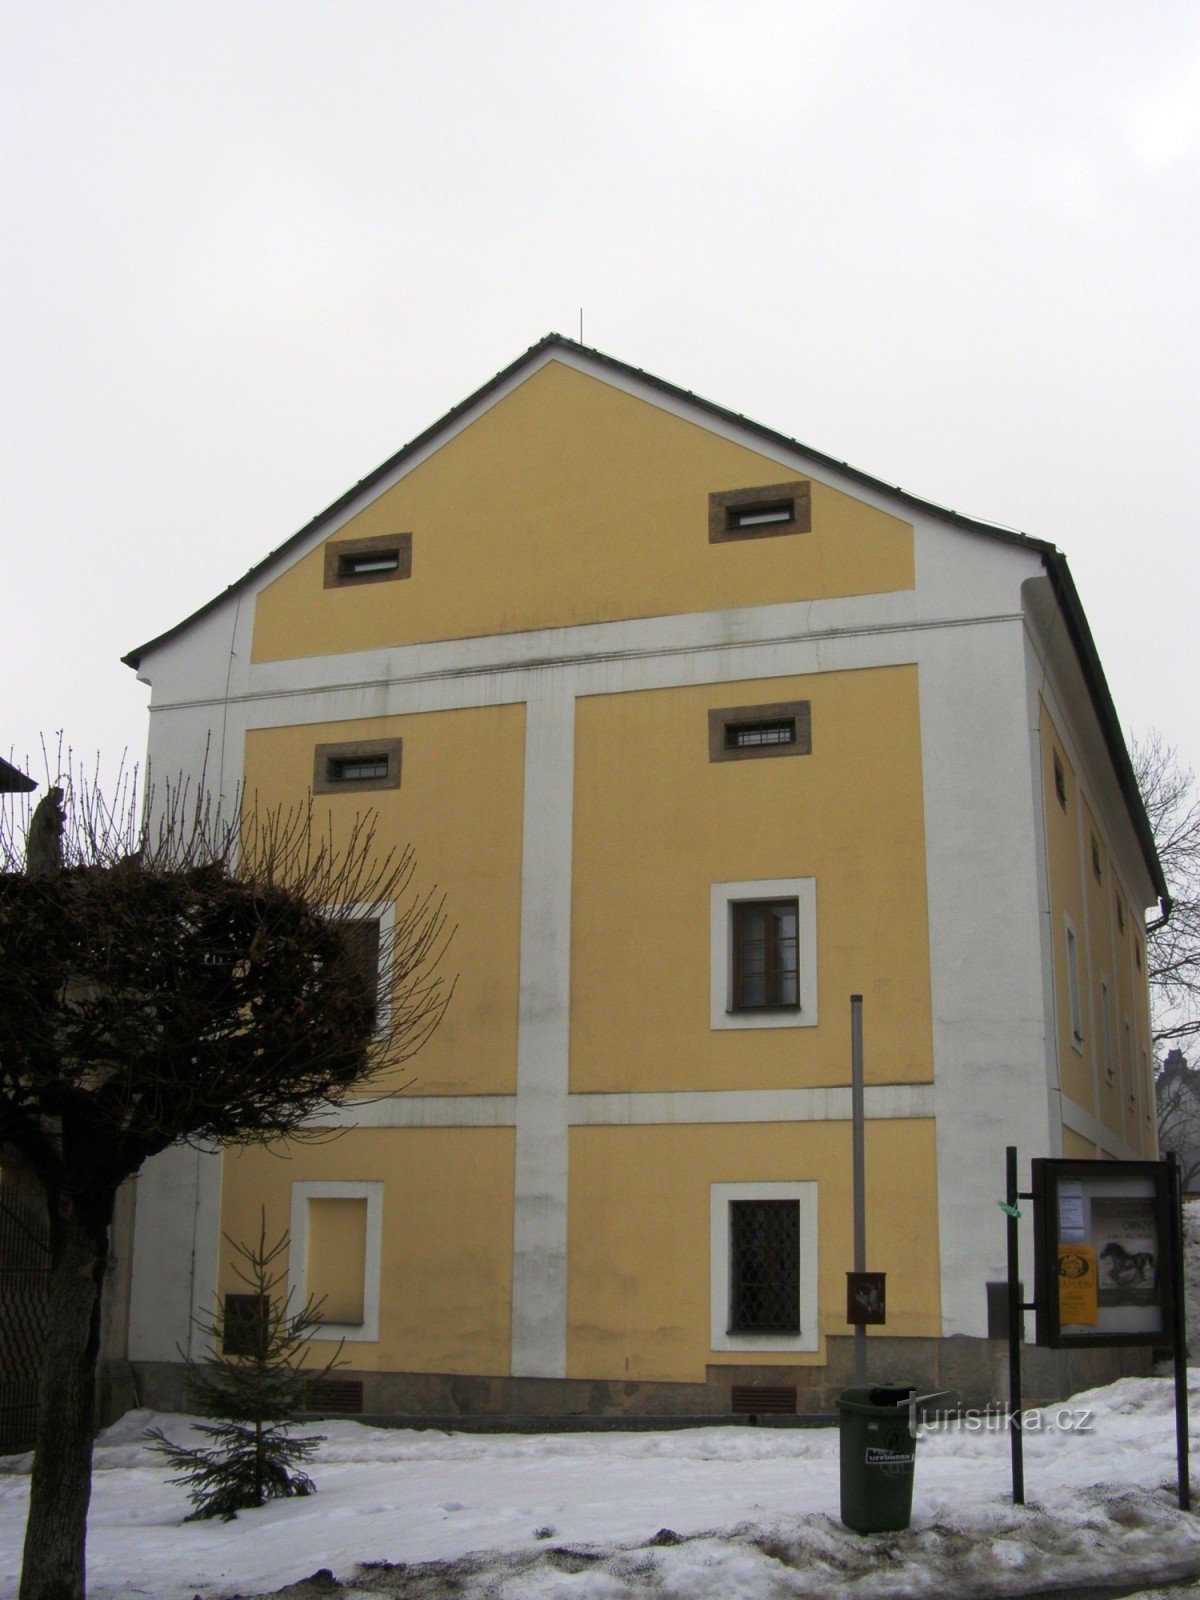 Dvůr Králové nad Labem - museum, Kohouts (Bergers) domstol